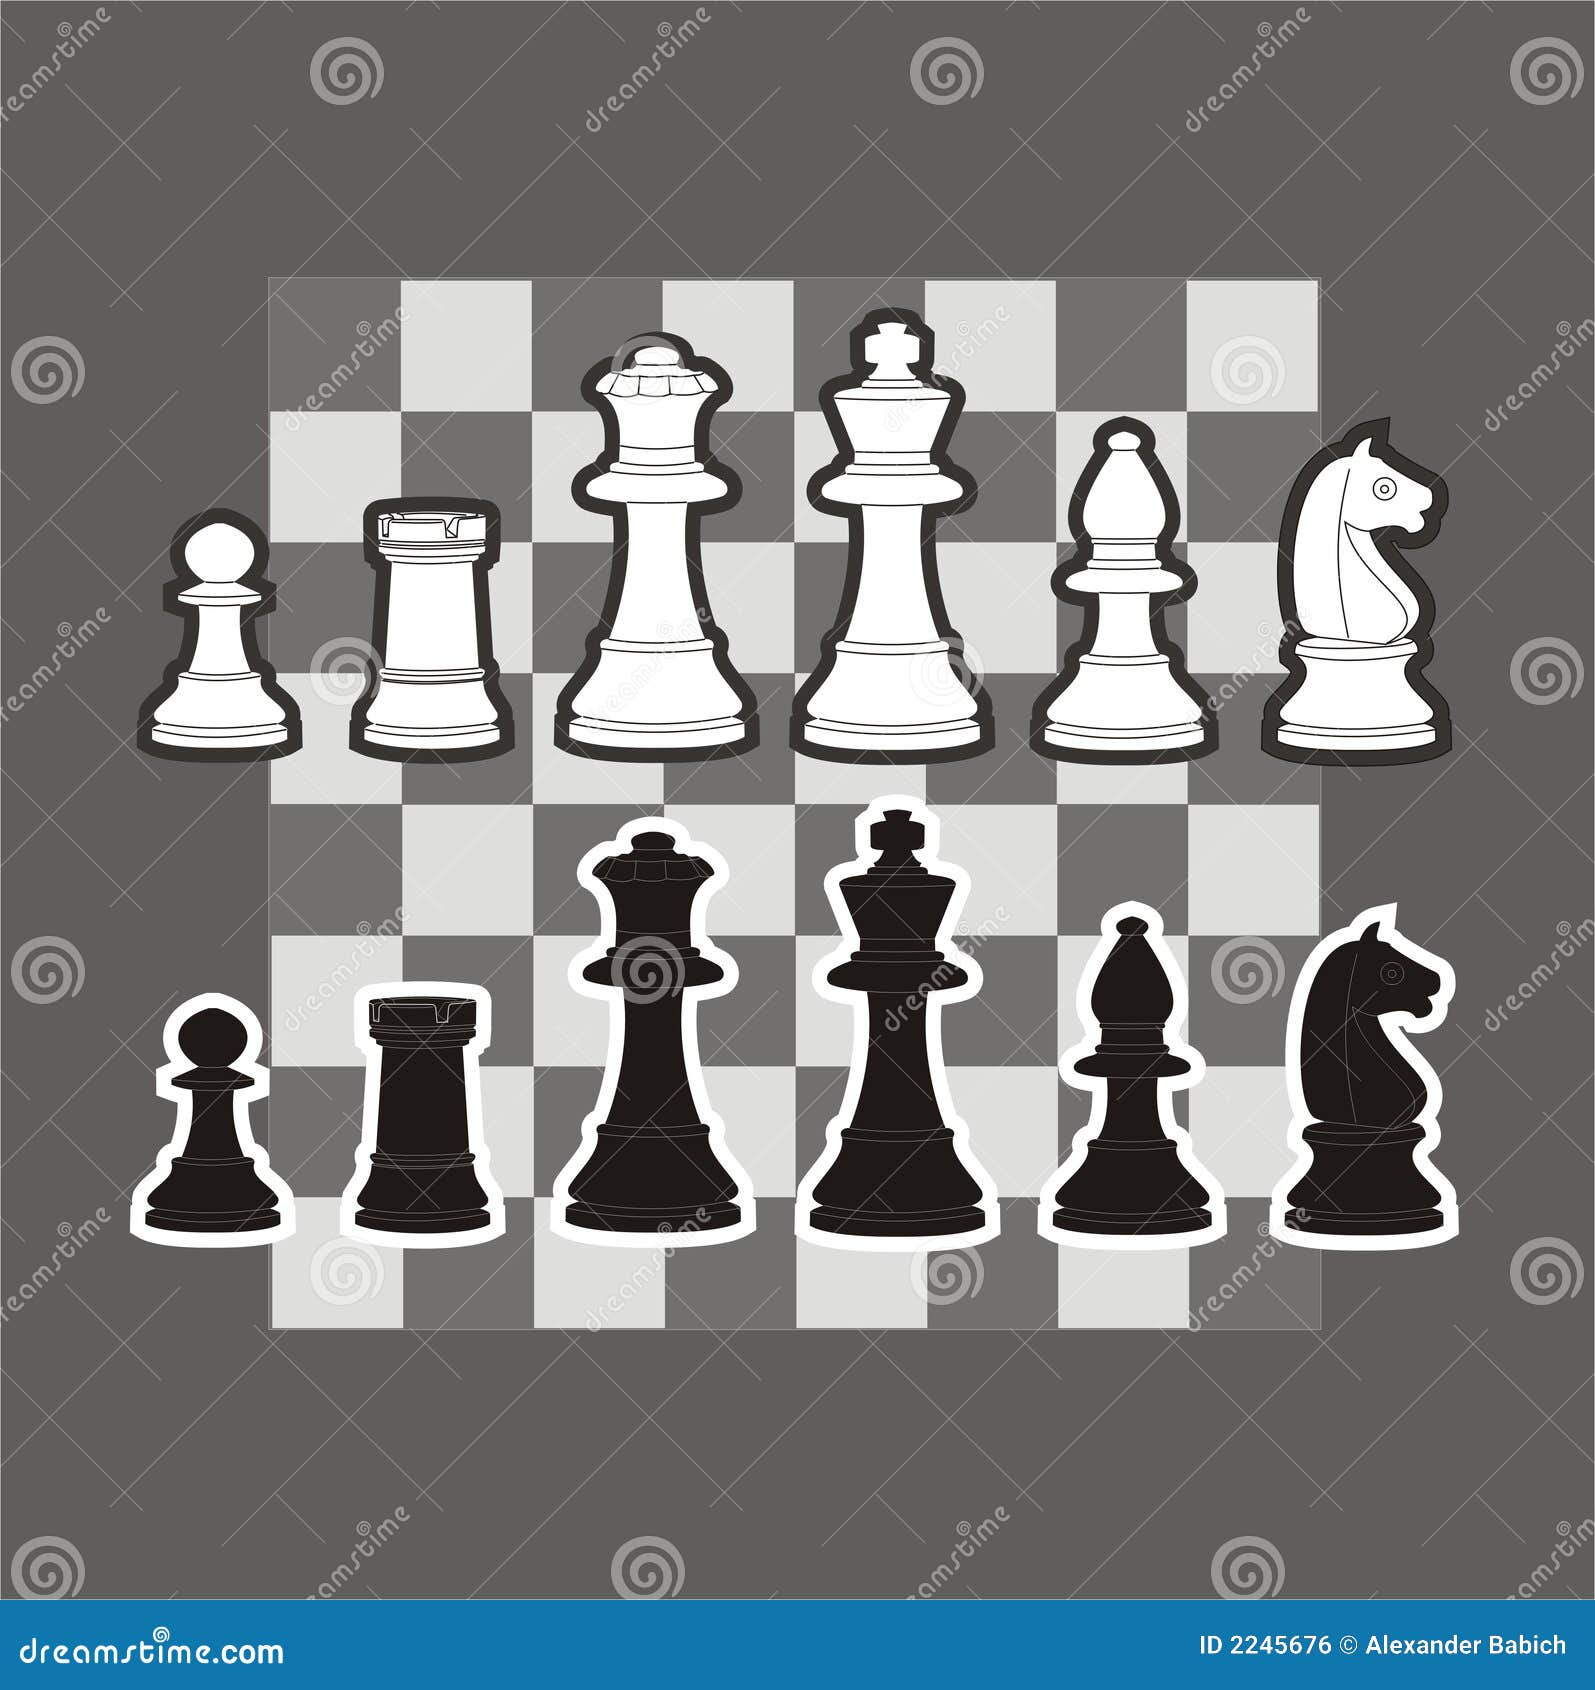 Рисование шахматной фигуры и доски